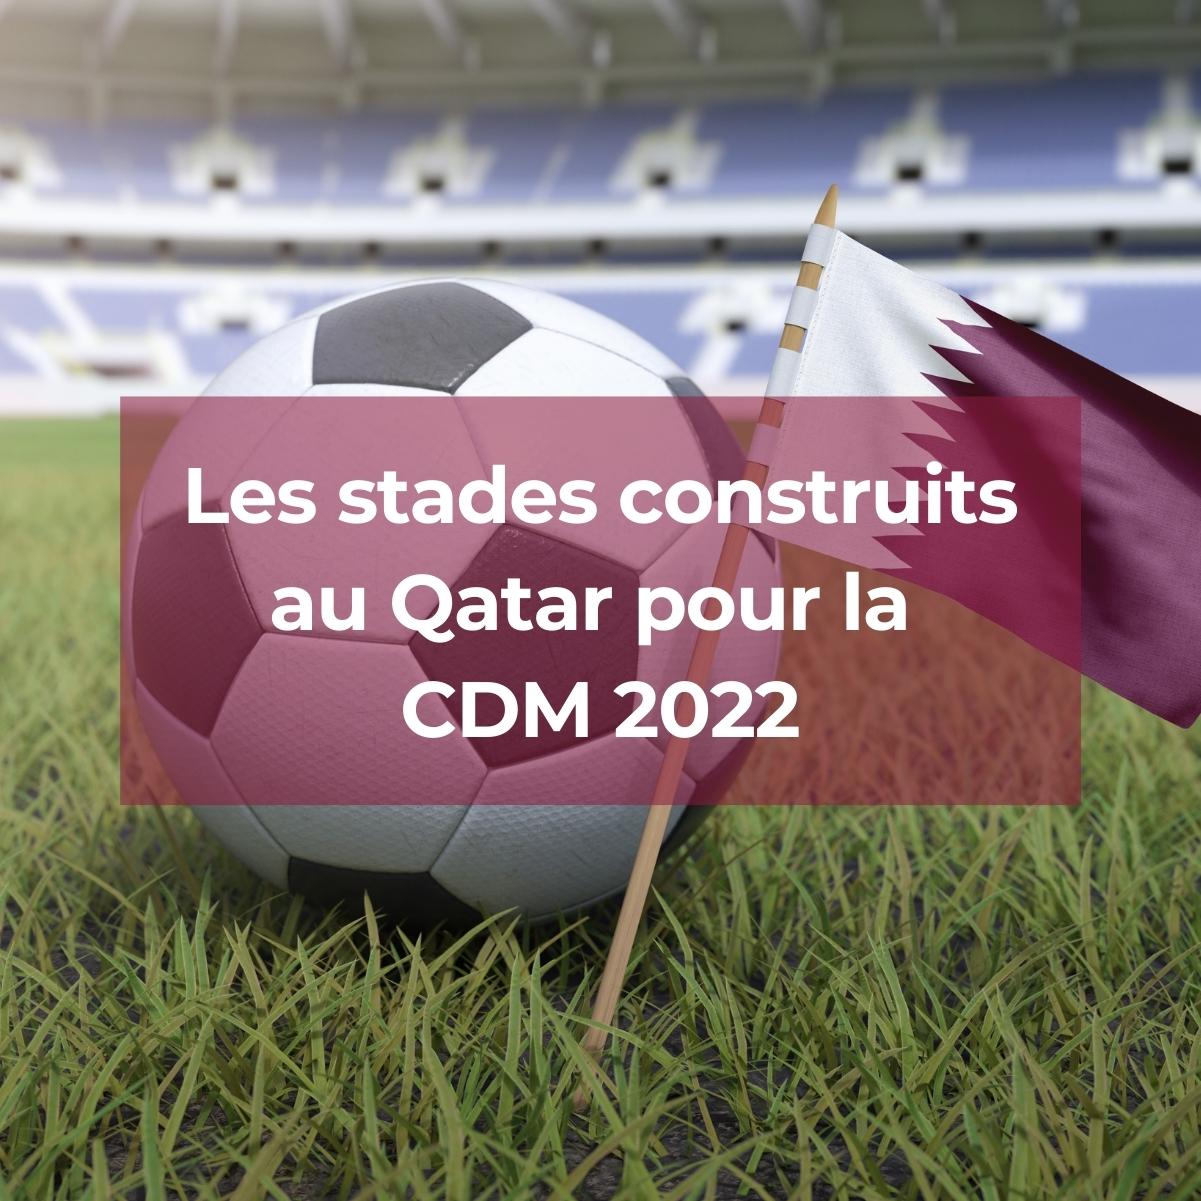 Les stades construits au Qatar pour la CDM 2022